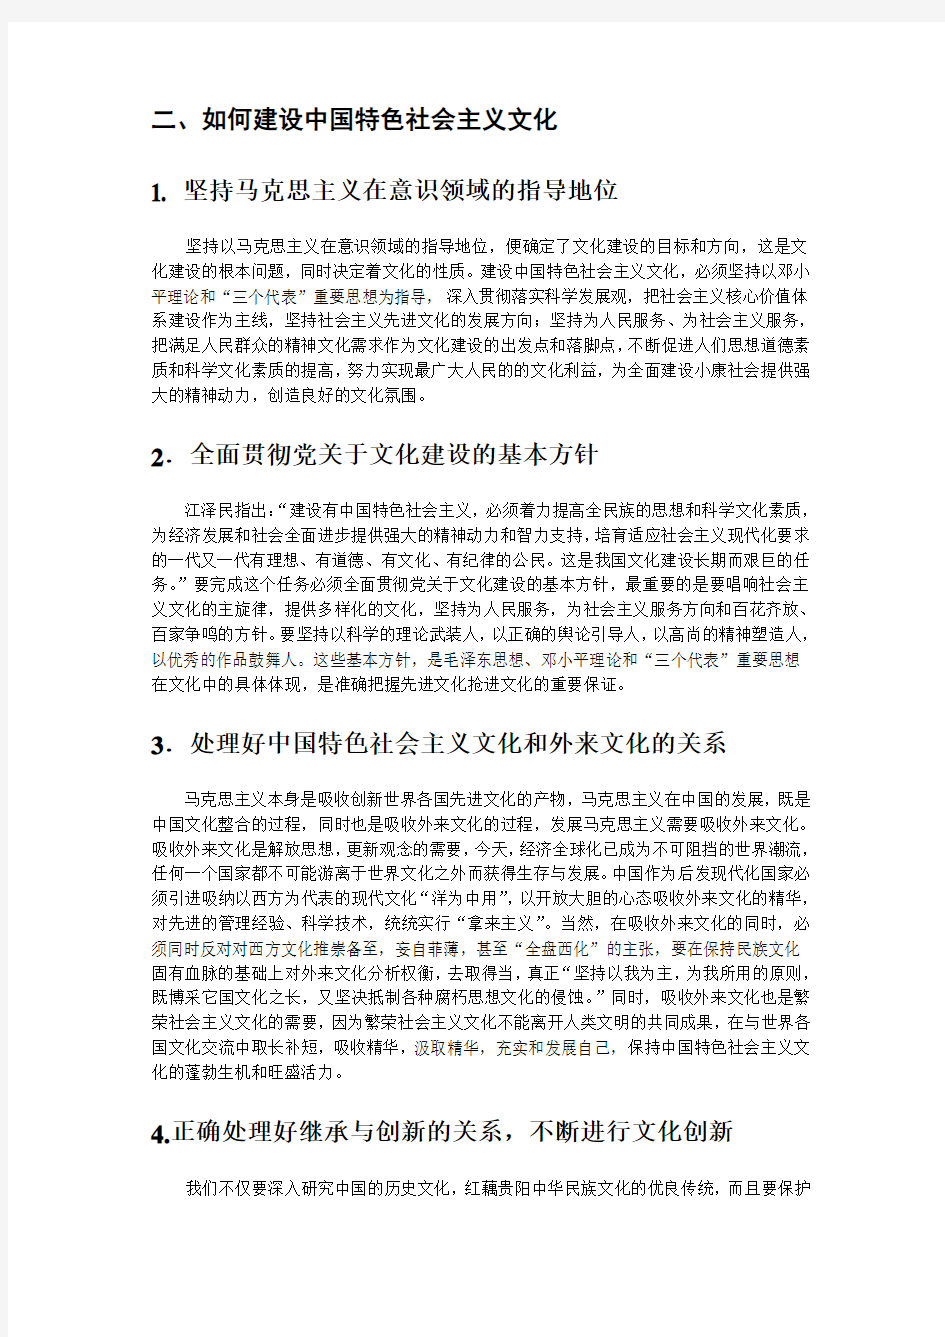 【完整版毕业论文】马克思课论文论建设中国特色社会主义文化